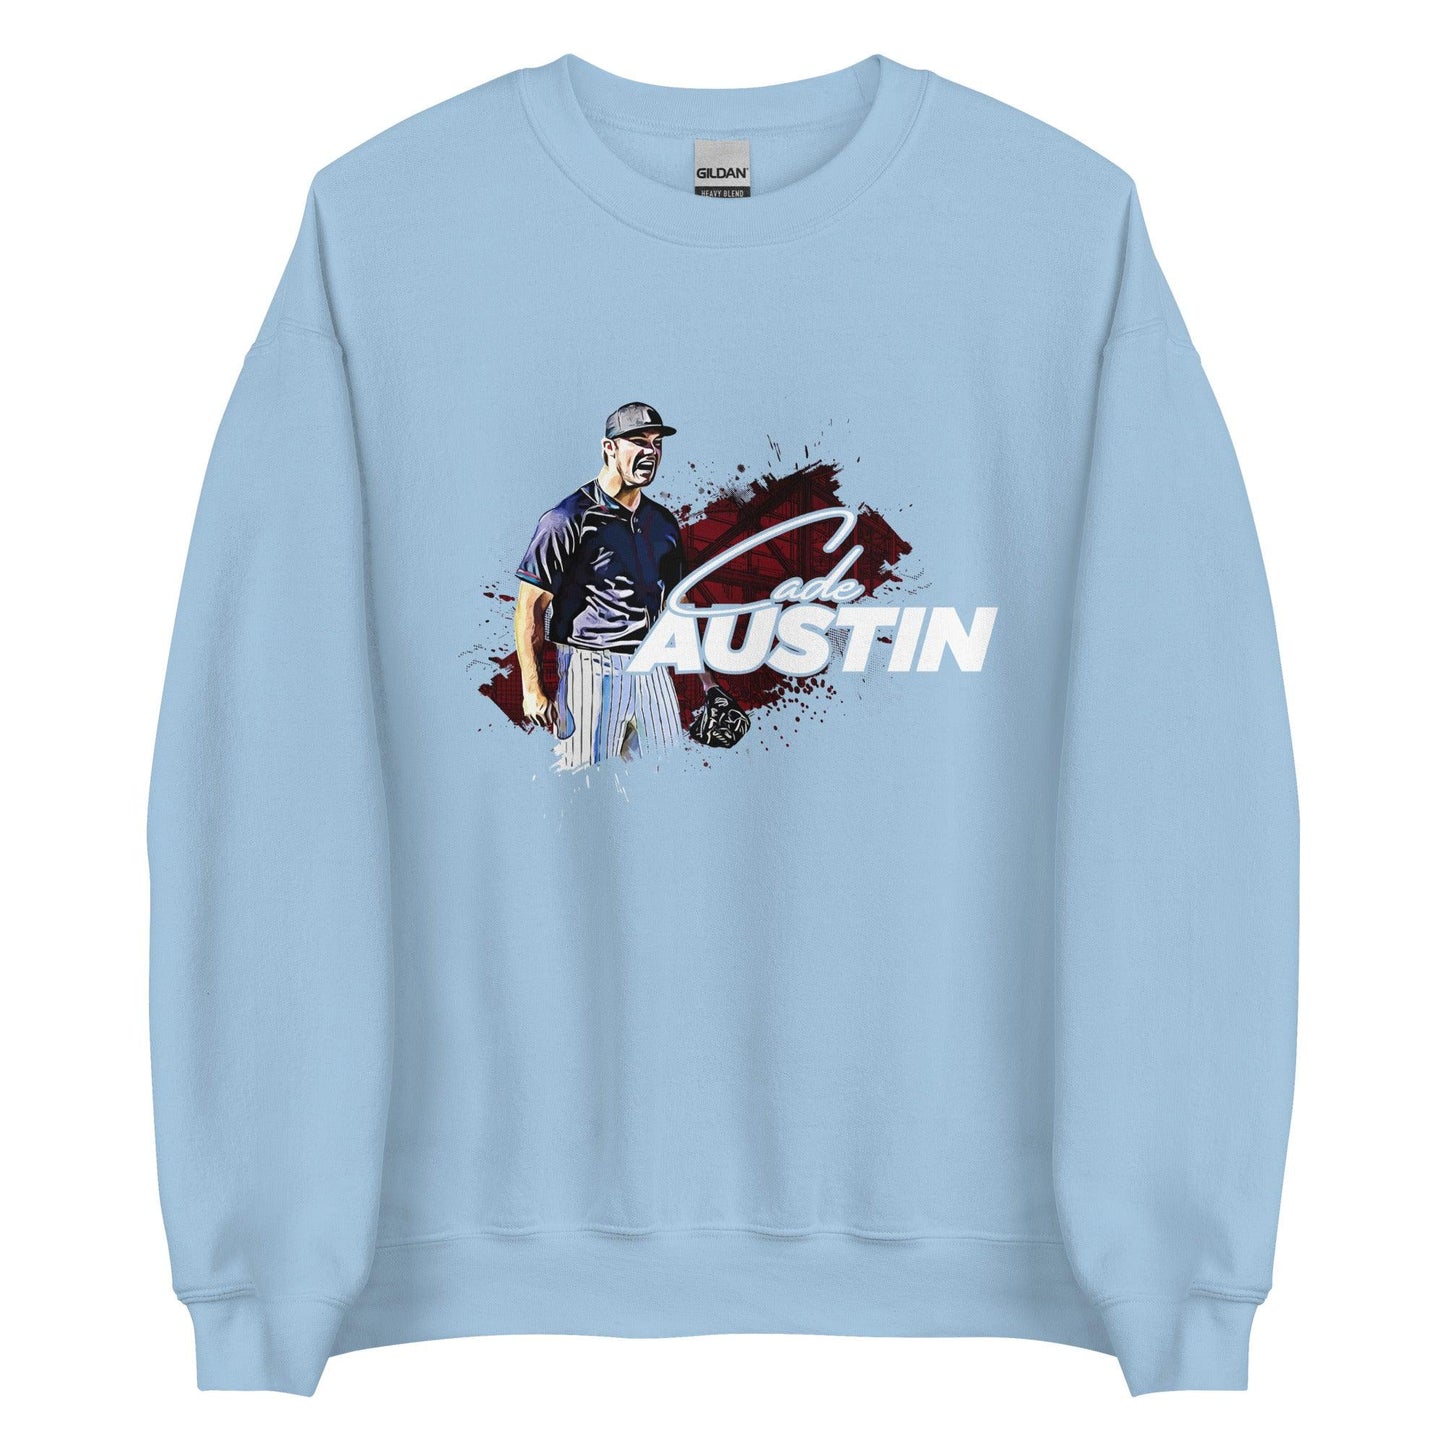 Cade Austin "Gameday" Sweatshirt - Fan Arch